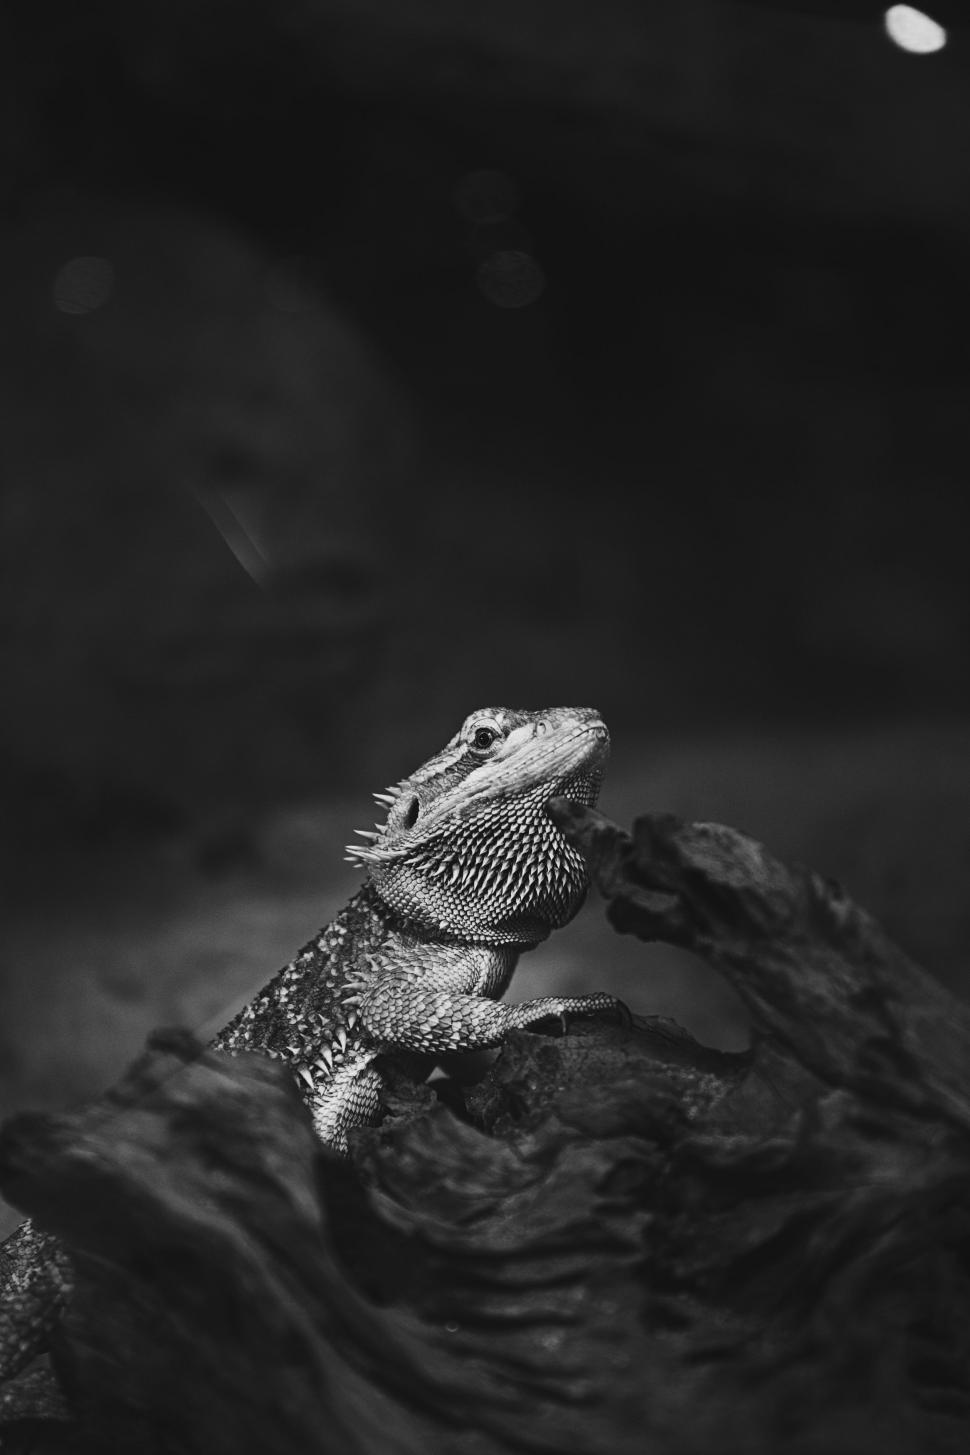 Free Image of Close up of Iguana 